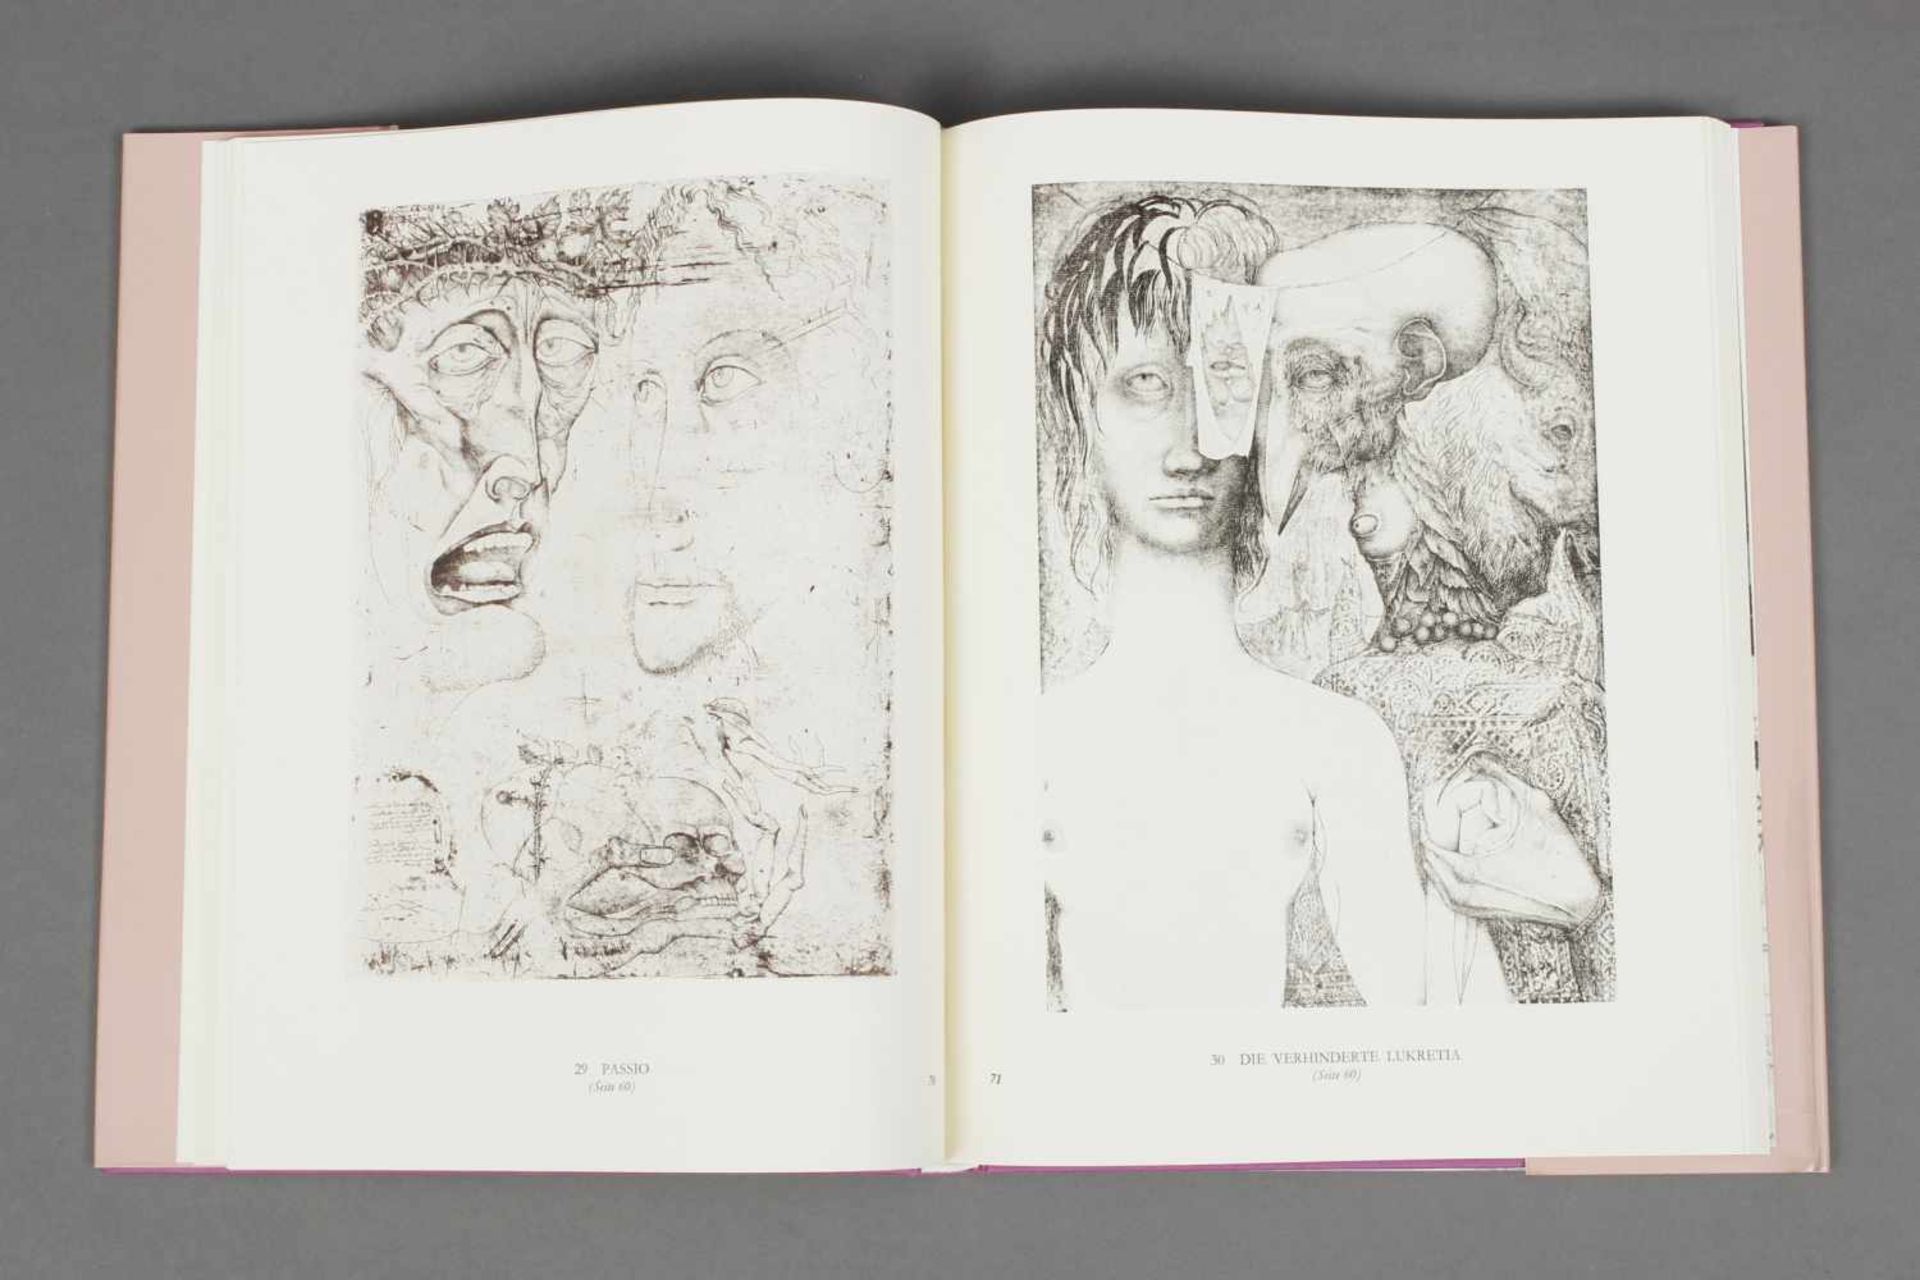 Künstlerbuch, ¨Ernst Fuchs. Das graphische Werk¨ von Helmut Weis, mit 1 eingebundenen Radierung ¨Eva - Image 2 of 2